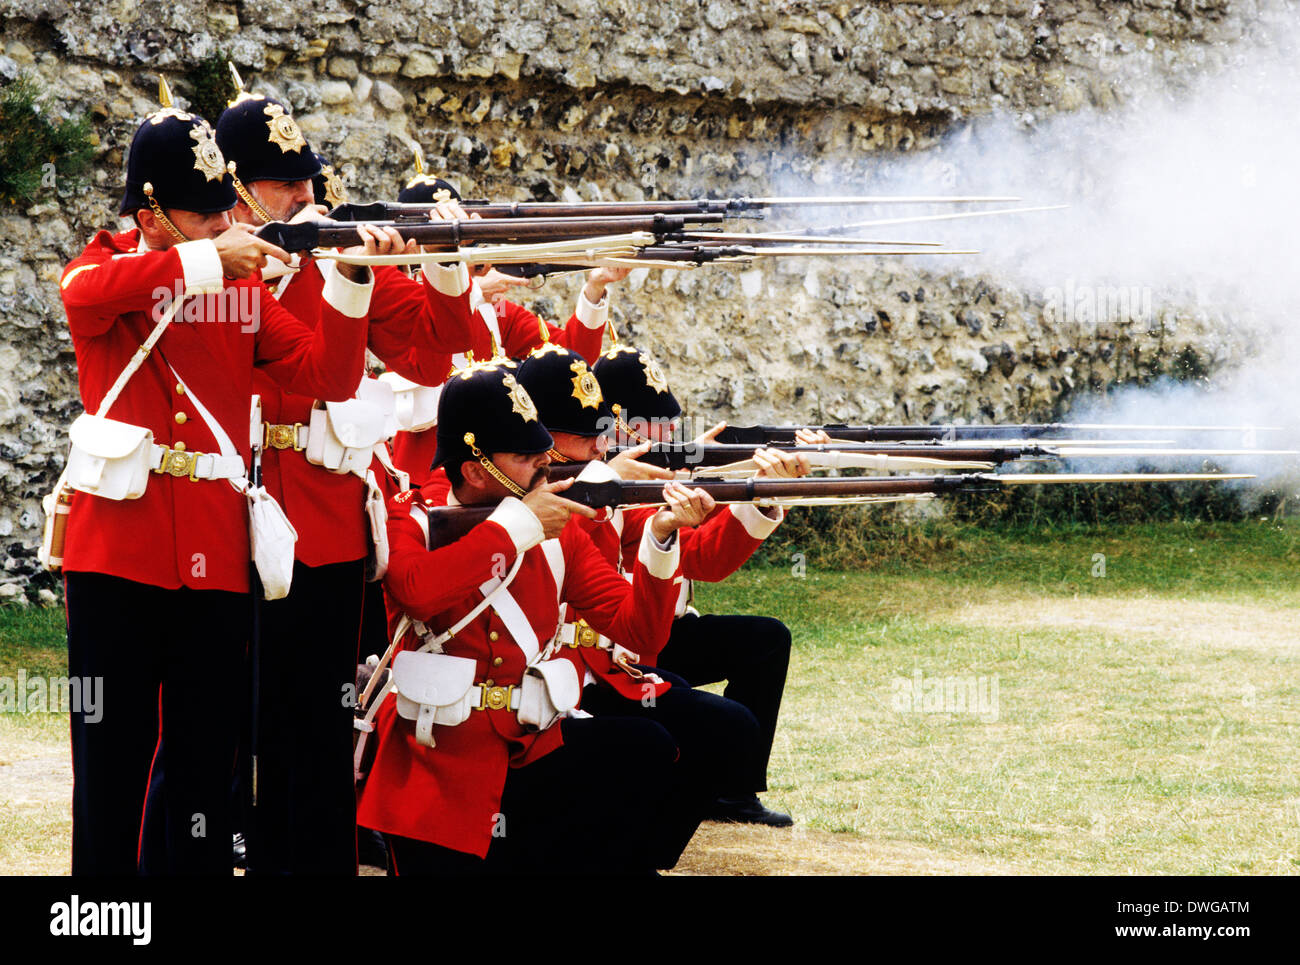 57. Middlesex Regiment, 1880, Scharfschützen schießen Volley, Reenactment des 19. Jahrhunderts britische Armee Soldat Soldaten einheitliche Uniformen England UK Gewehr Gewehre Rotröcke Stockfoto